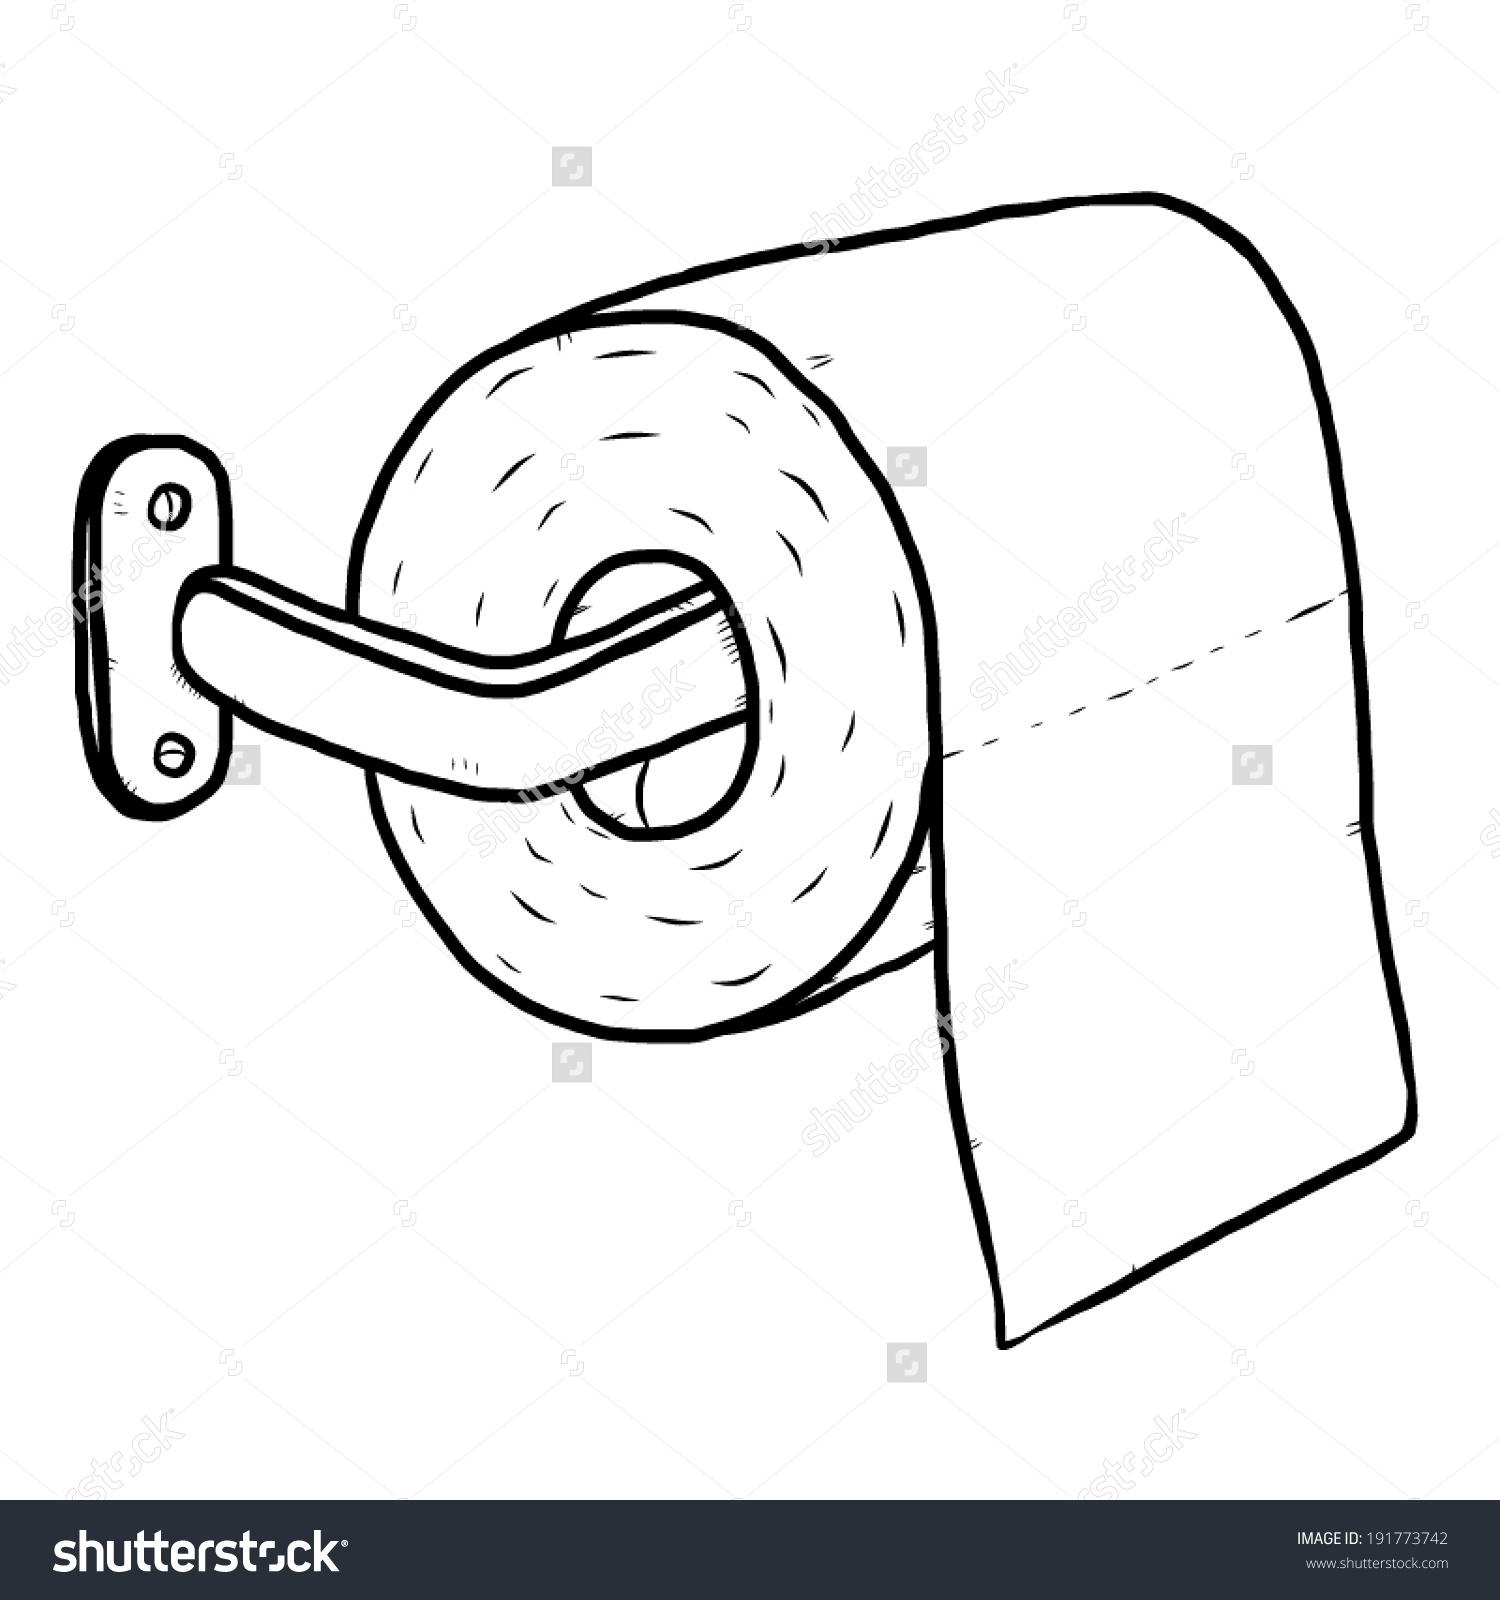 clipart toilet paper - photo #50